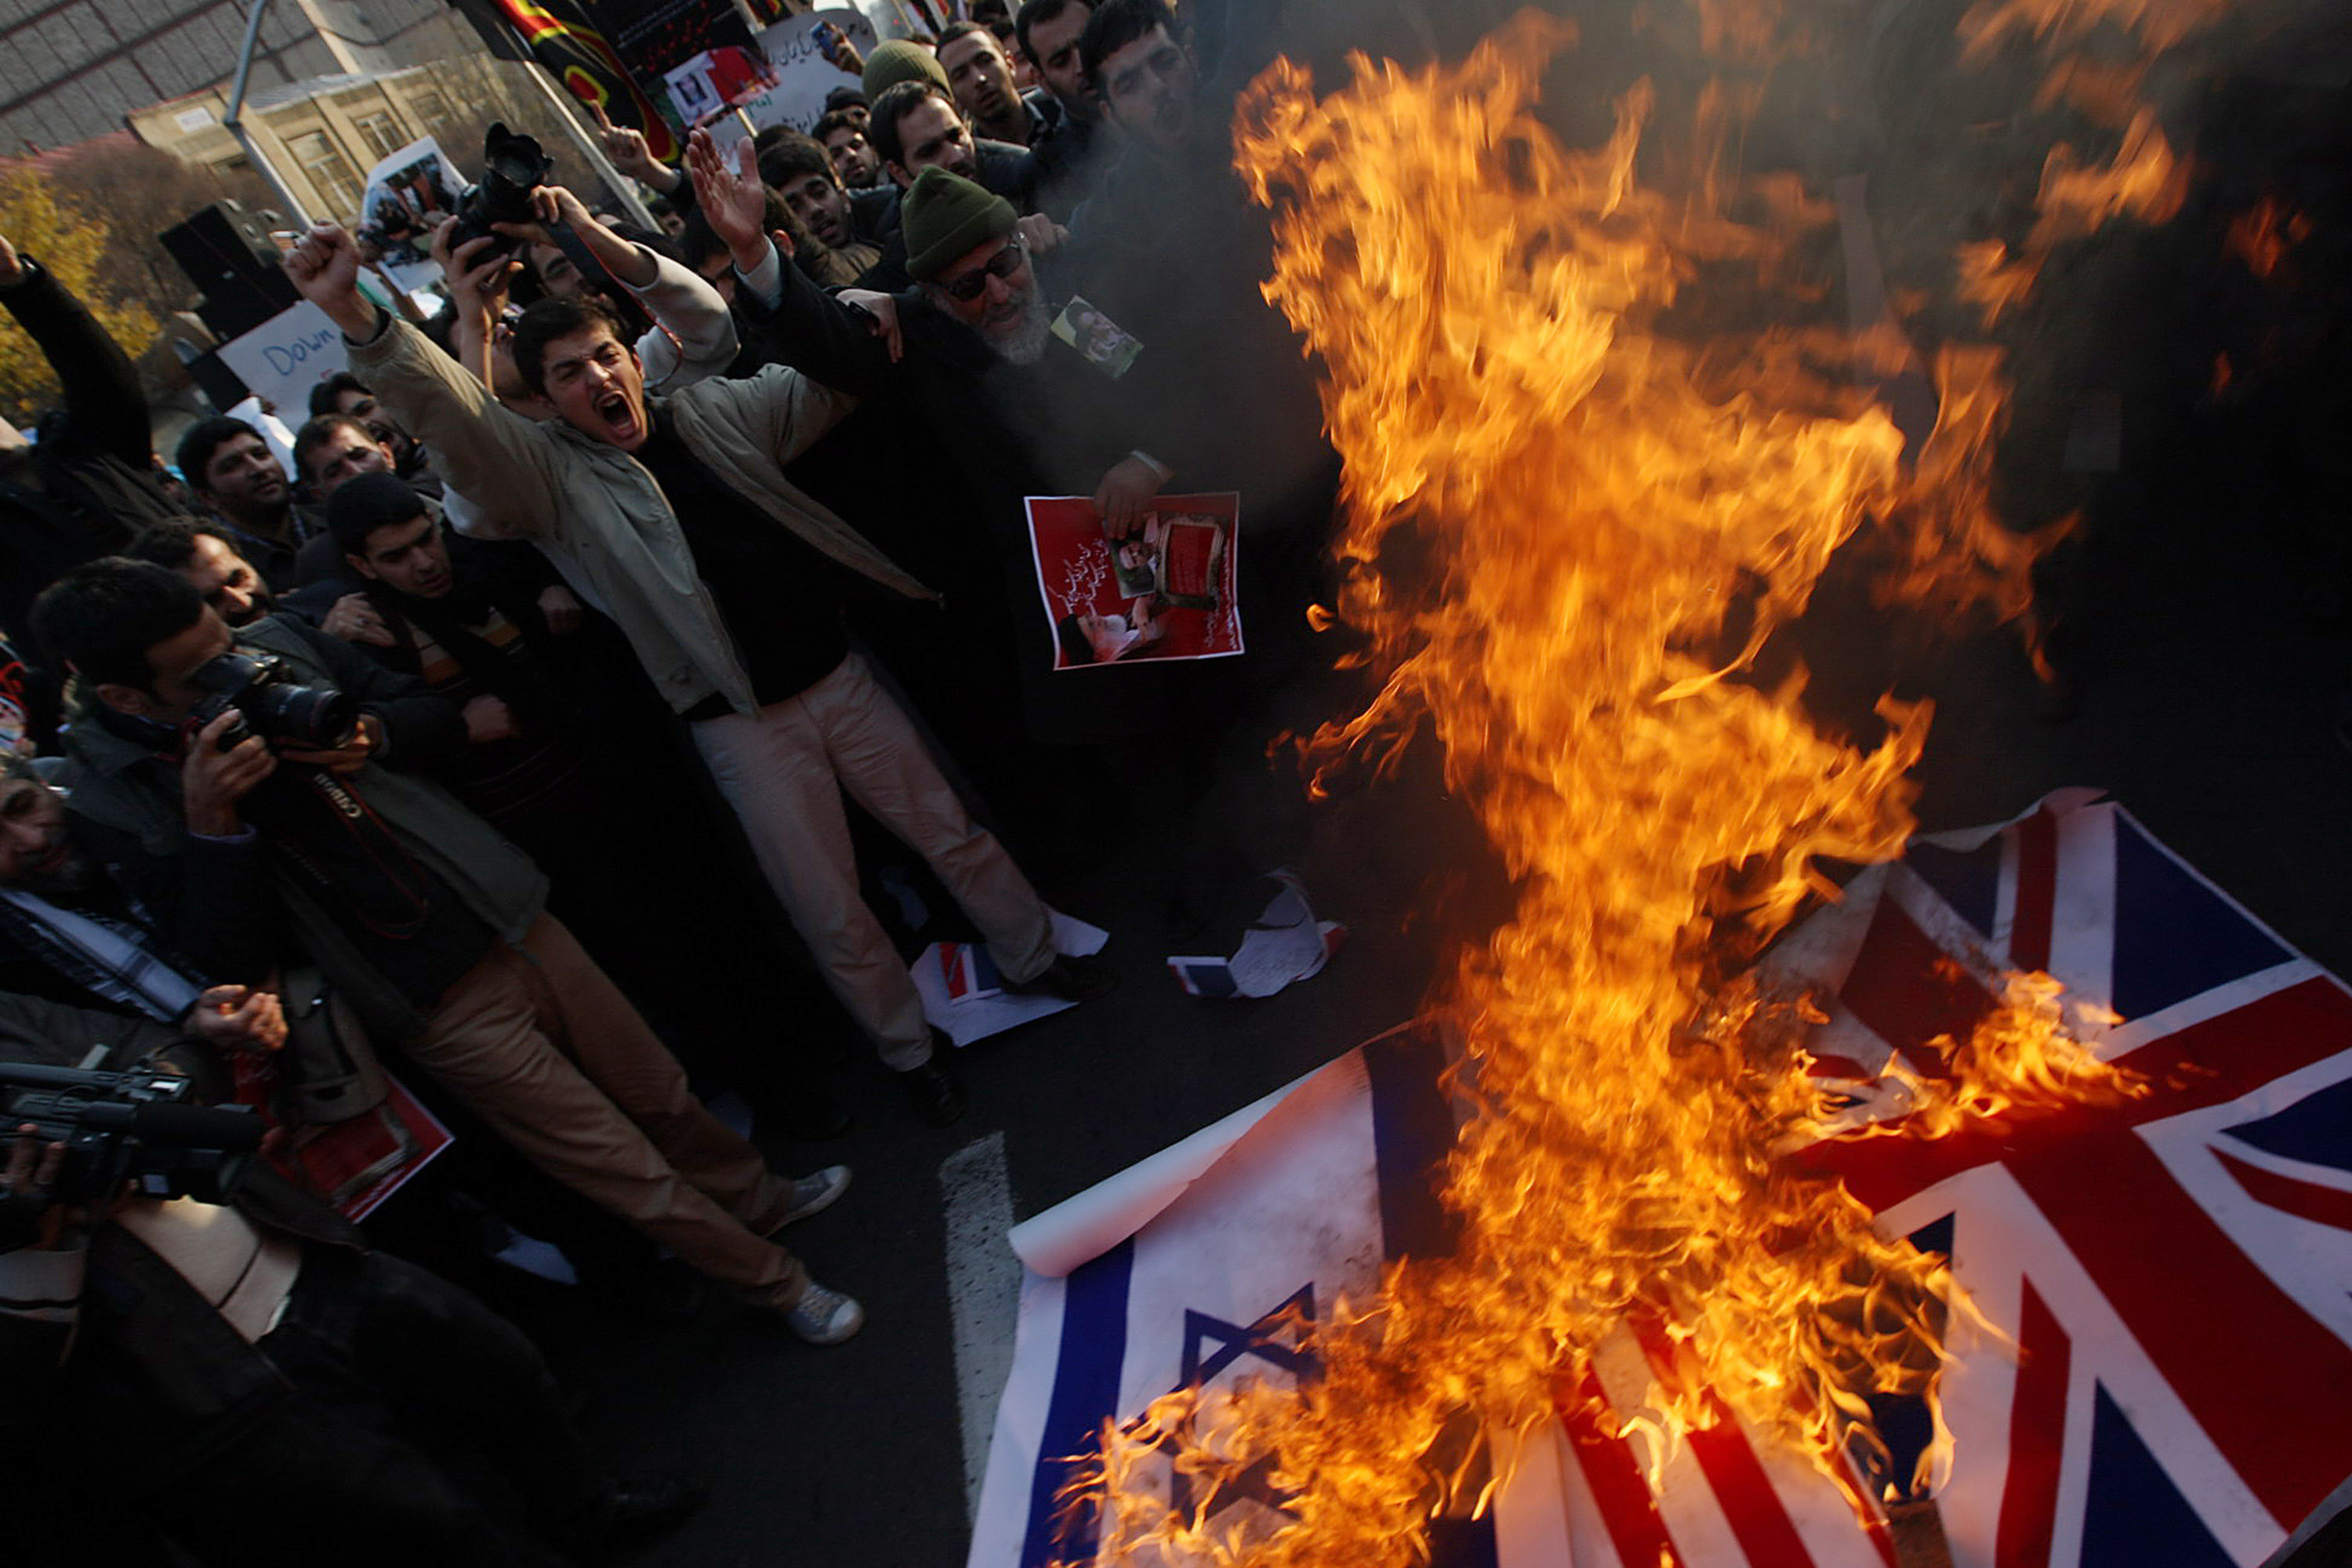 ООН, страны ЕС, США и Россия также осудили иранское правительство в связи с нападением. Фото: FarsNews/Getty Images